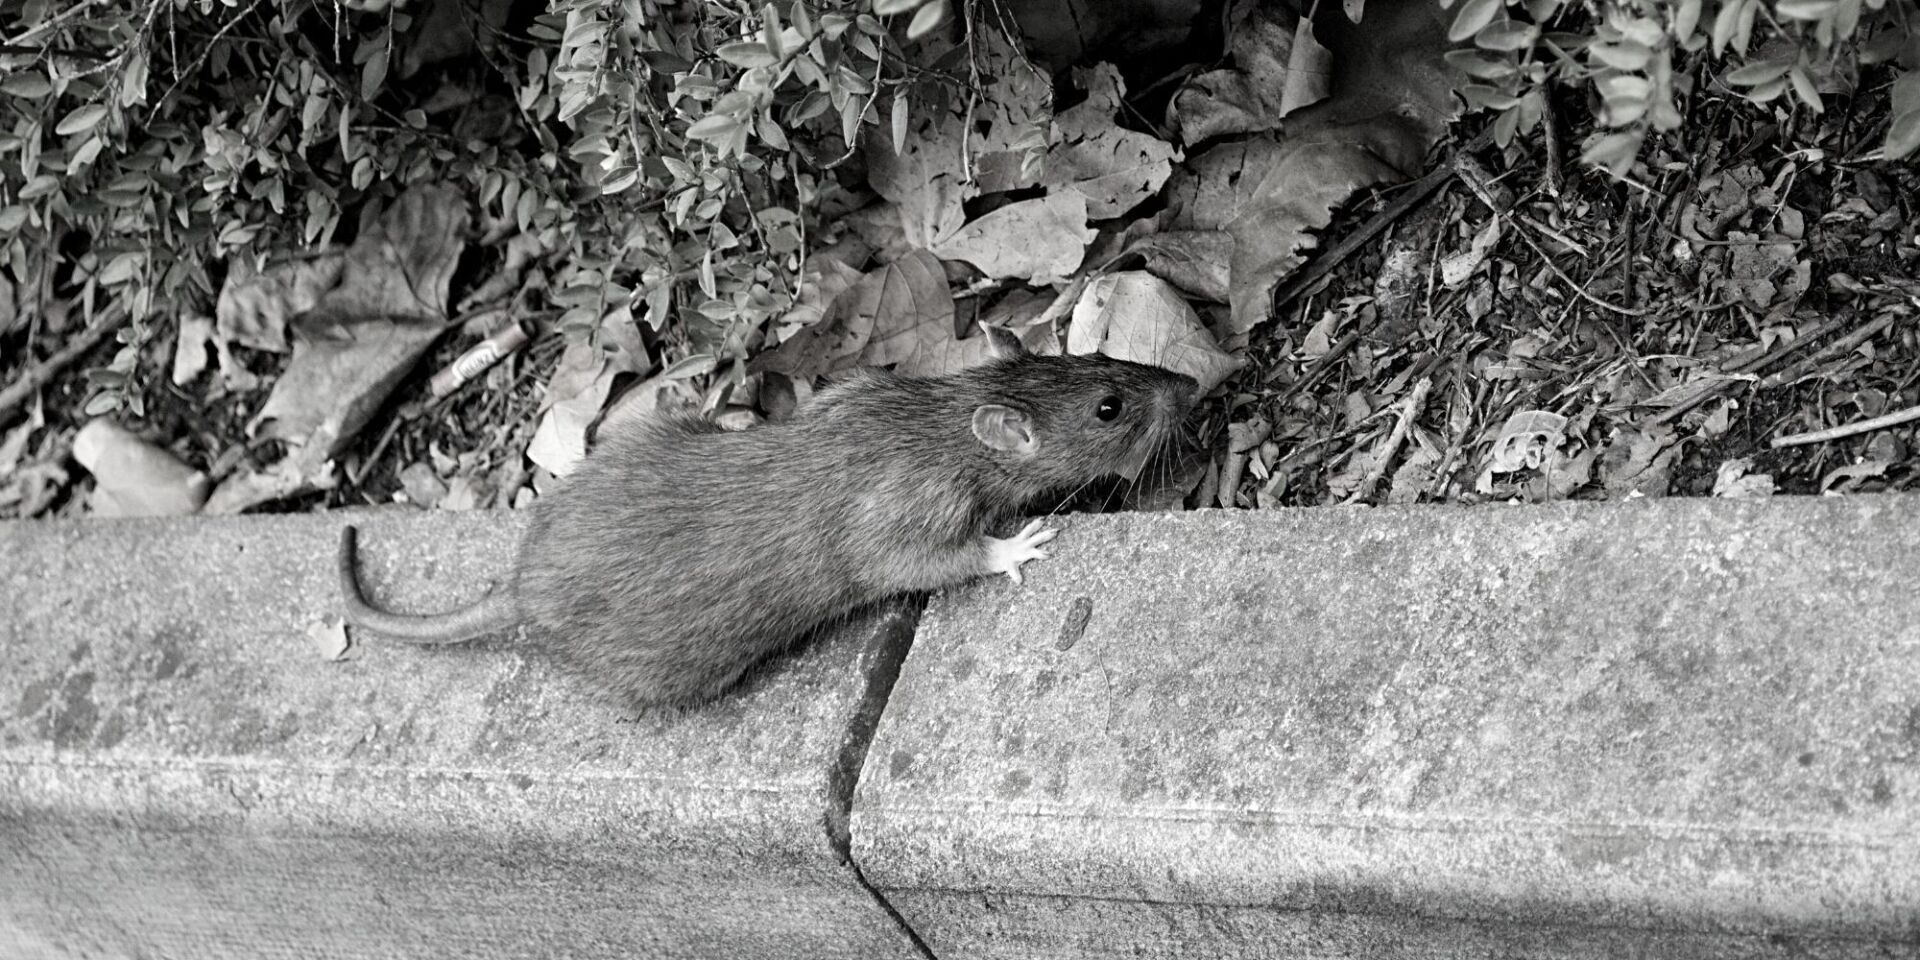 What's The Best Rat Trap Bait?. The Best Rat trap Bait, by The Bristol Rat  Company